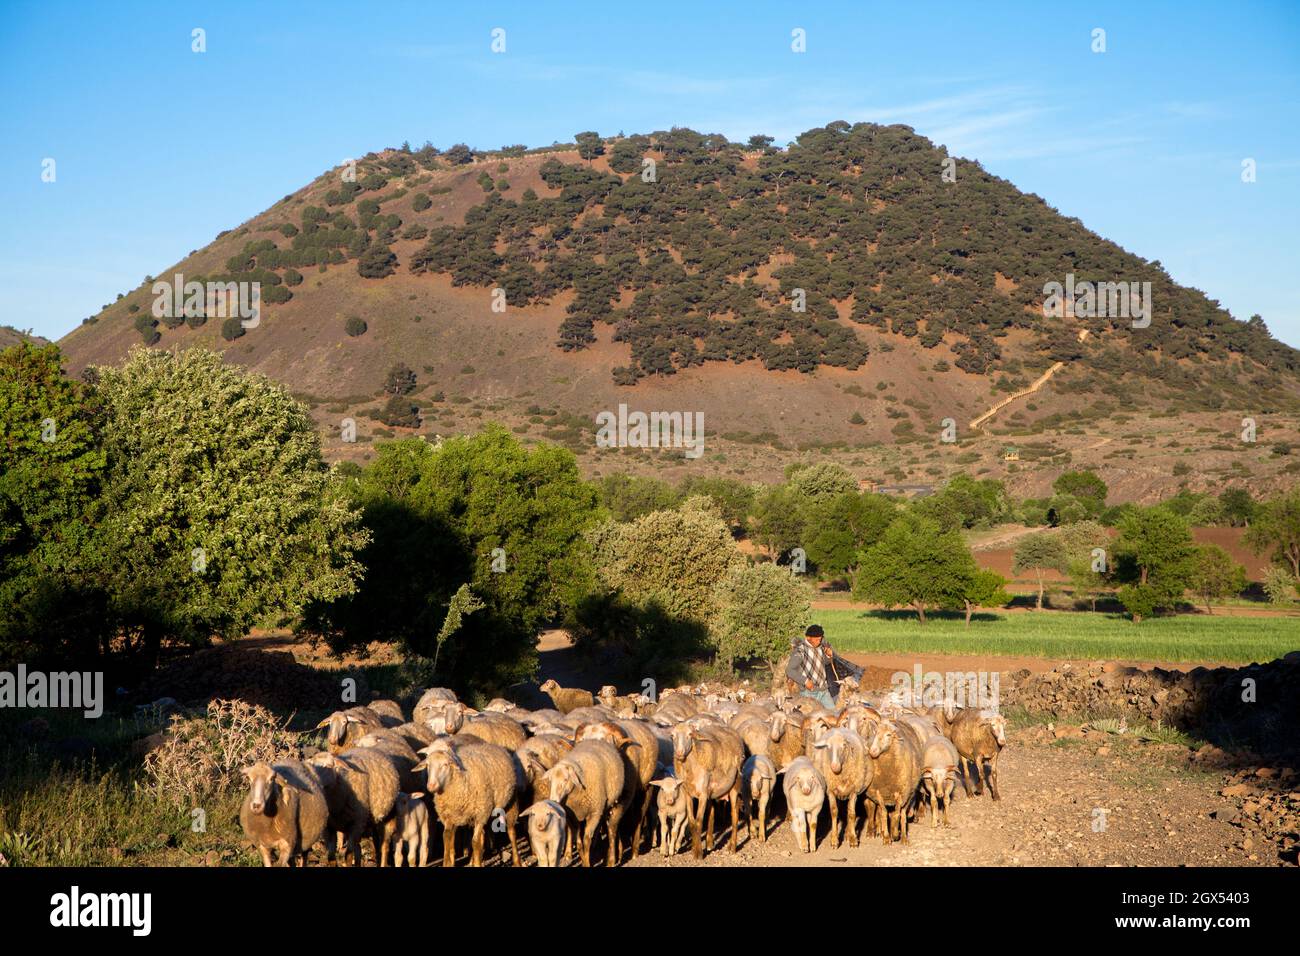 Kula,Manisa,Turkey - 04-22-2016:View of herd of sheep with Kula volcano Stock Photo